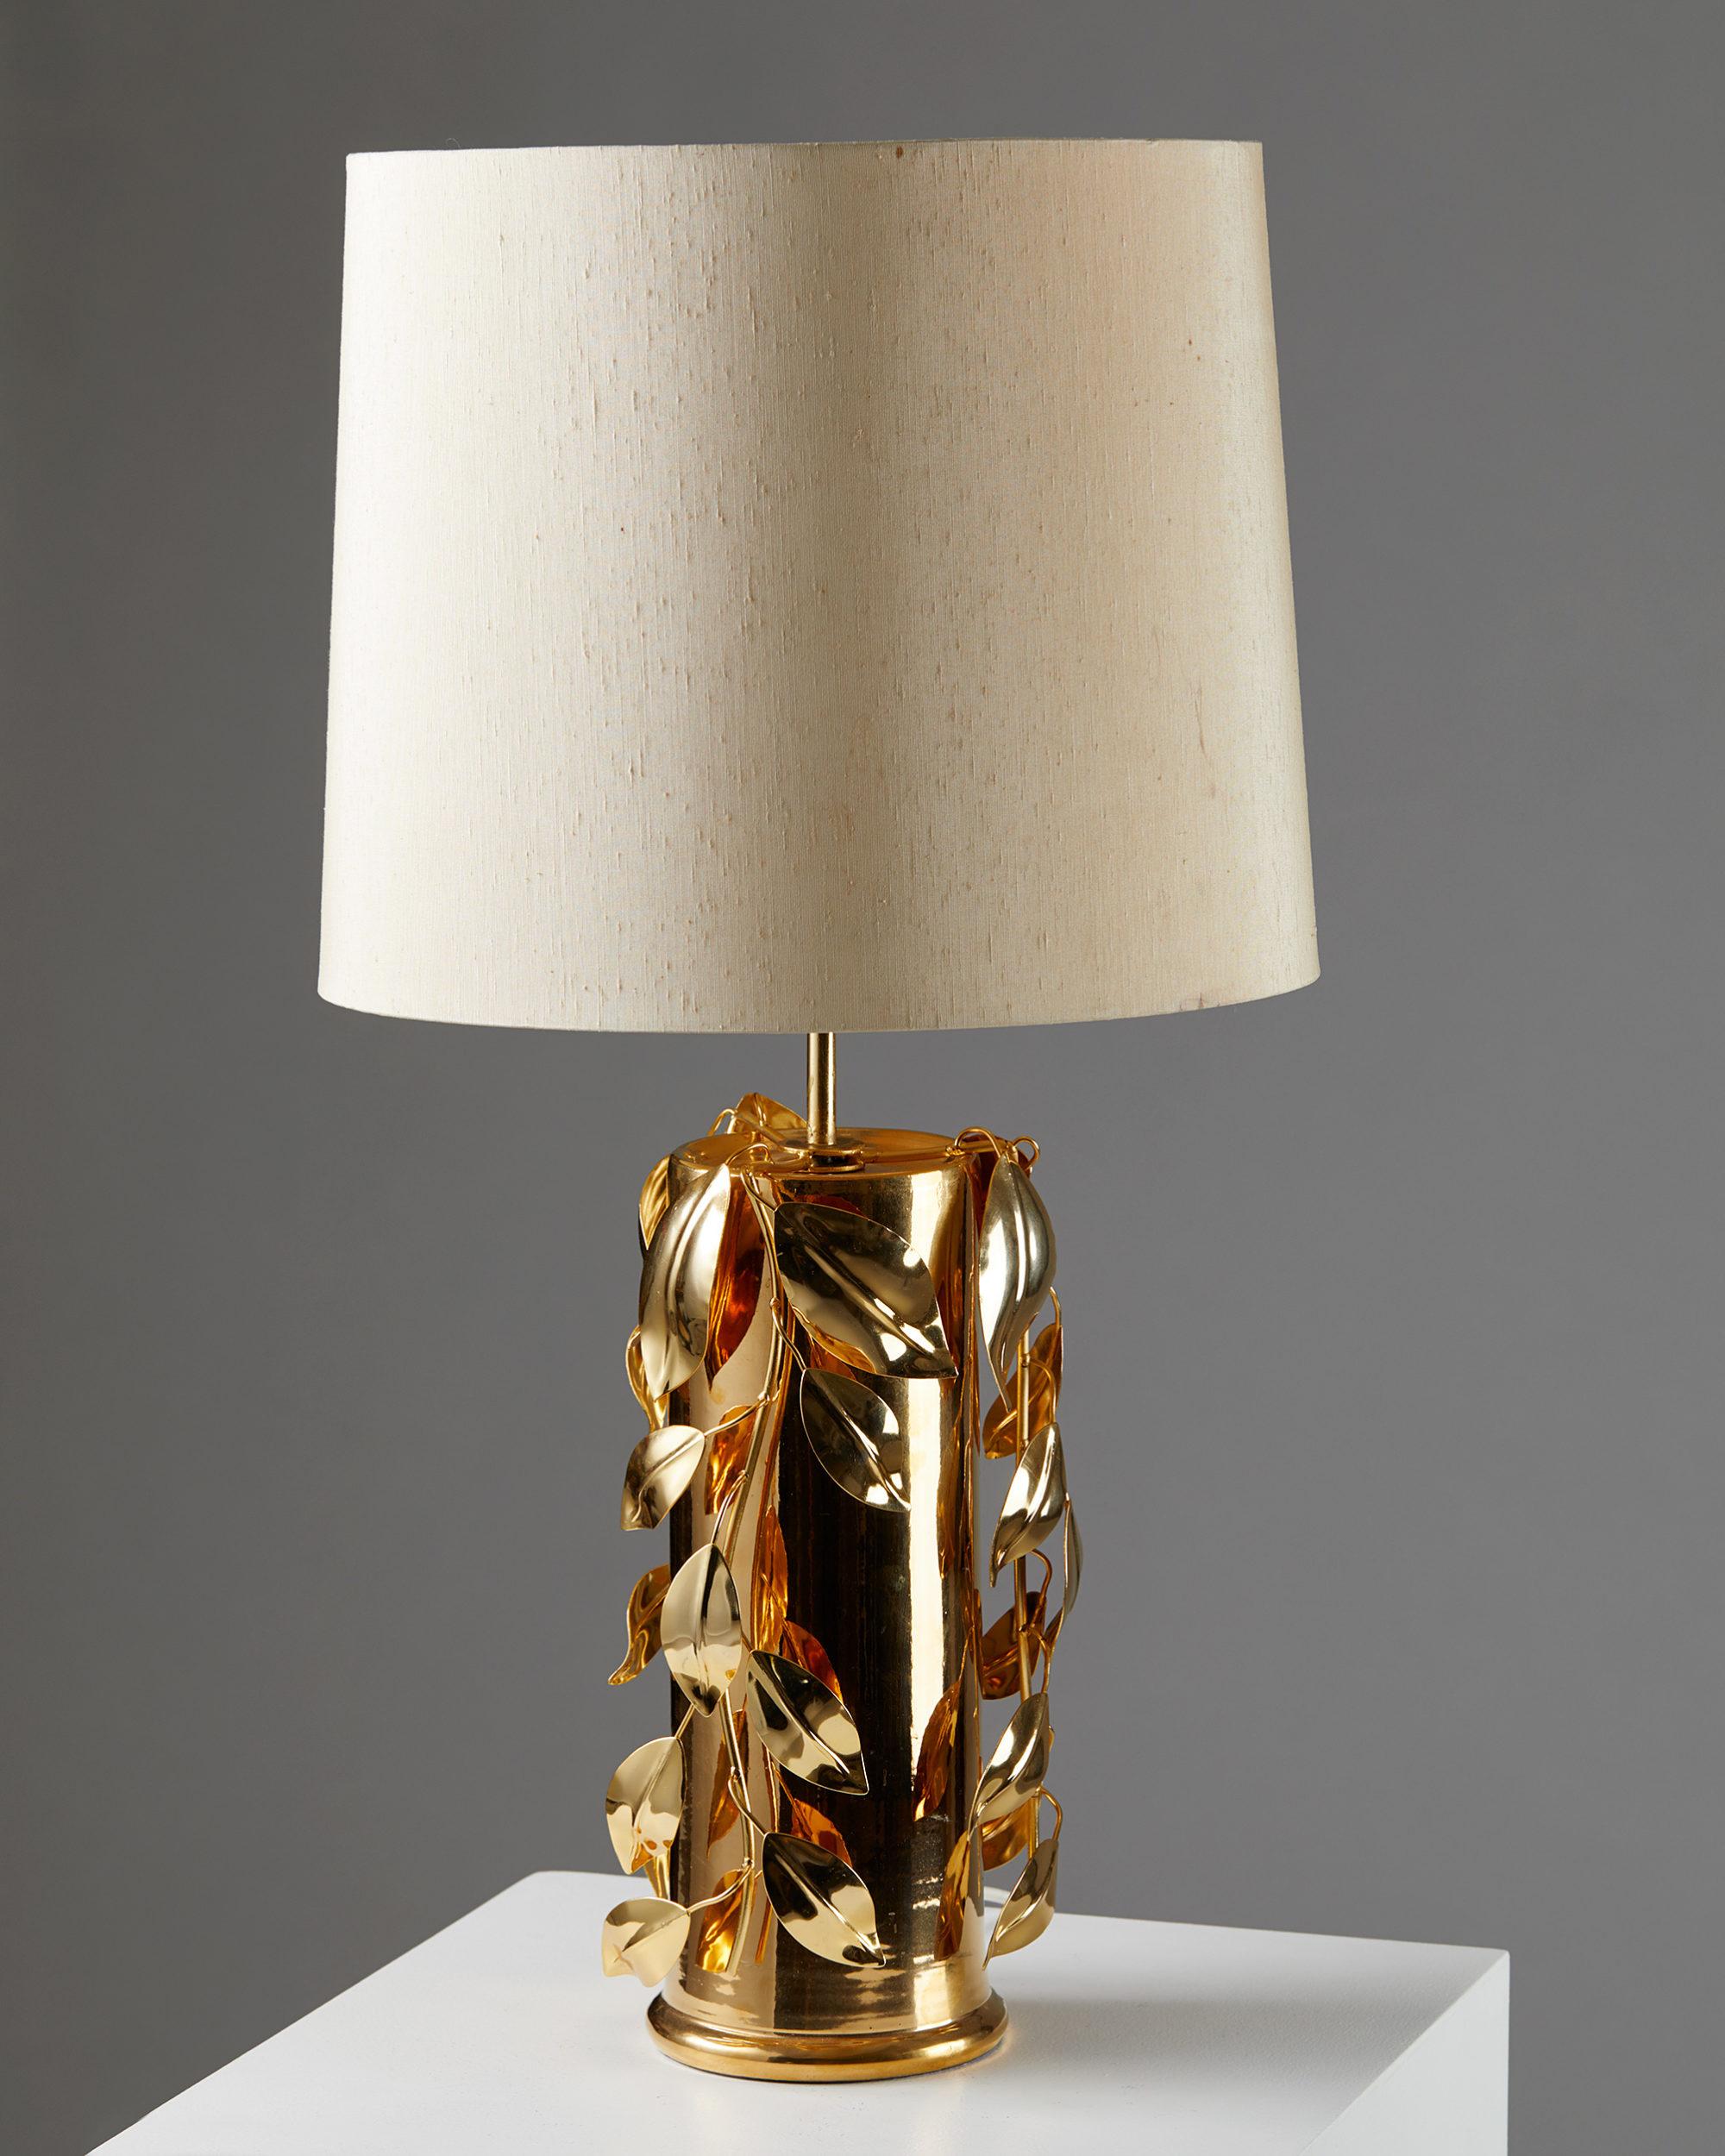 Scandinavian Modern Table Lamp Designed by Bertil Brisborg for Nordsika Kompaniet, Stockholm, 1960s For Sale